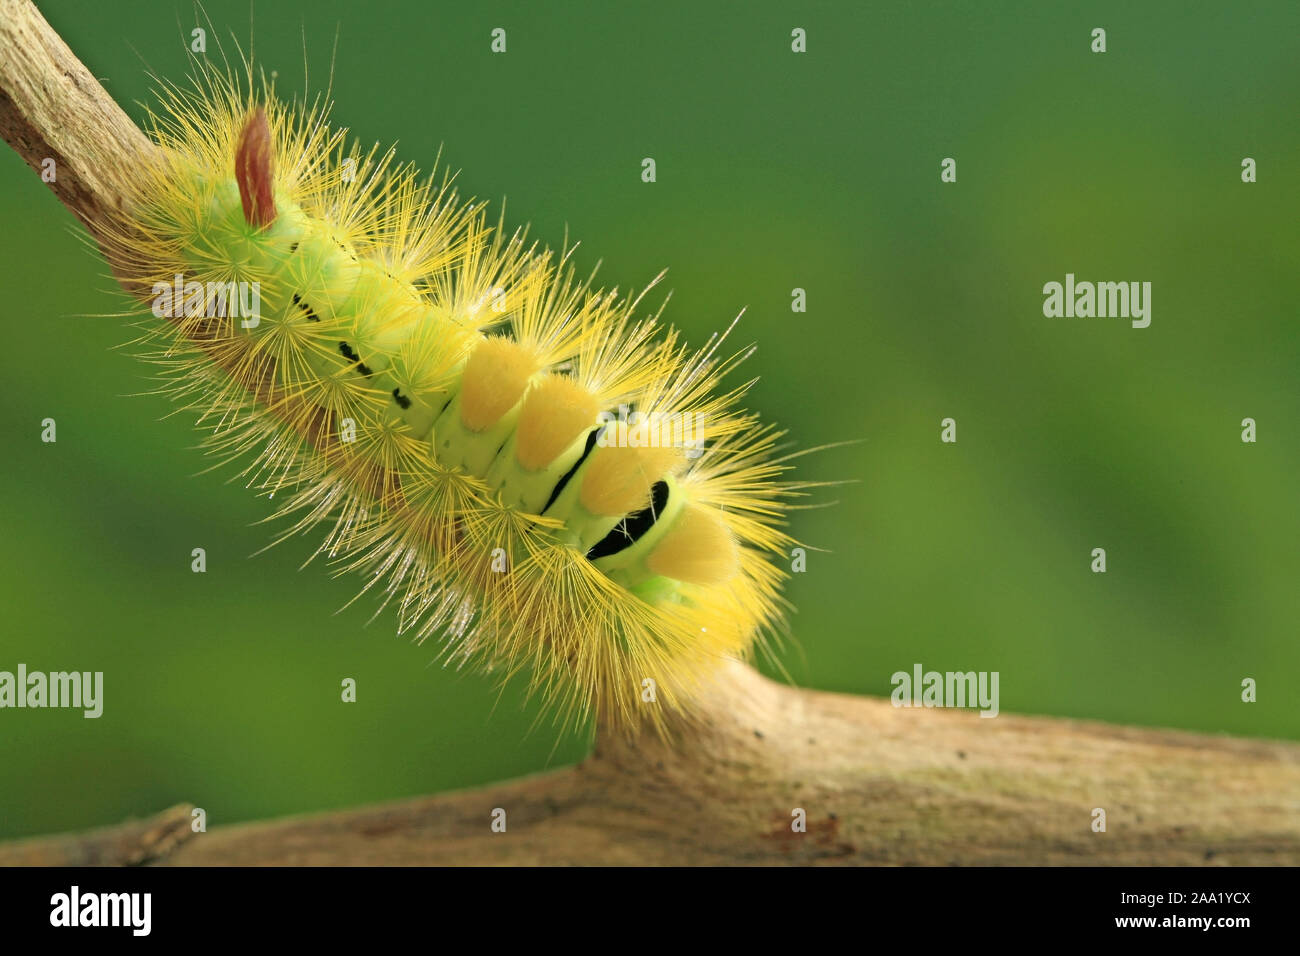 Rotschwanzspinner (Dasychira pudibunda) / Catterpillar (Dasychira pudibunda) Stock Photo